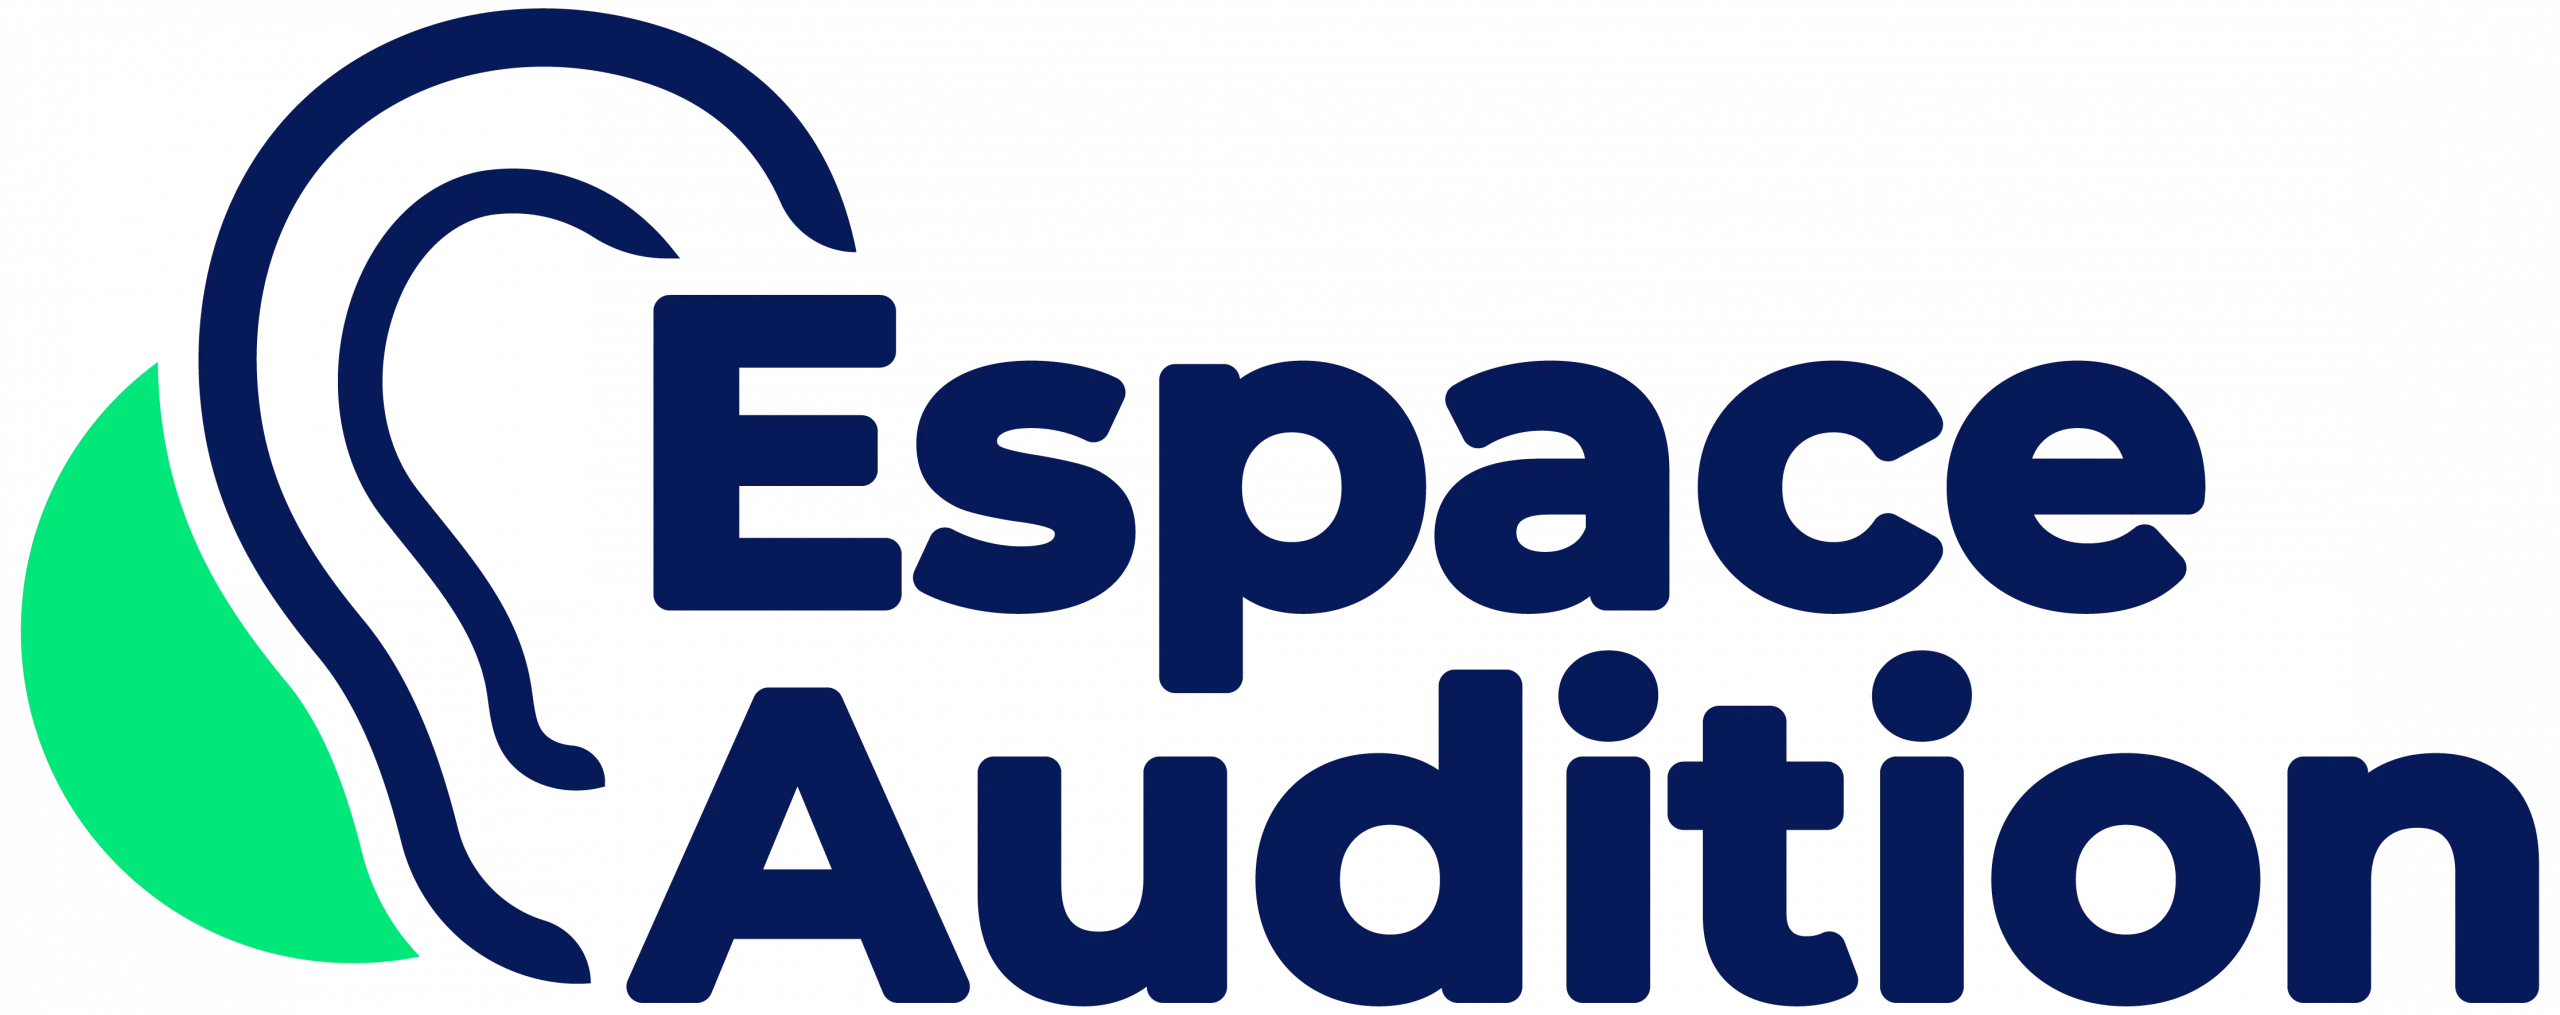 Espace Audition